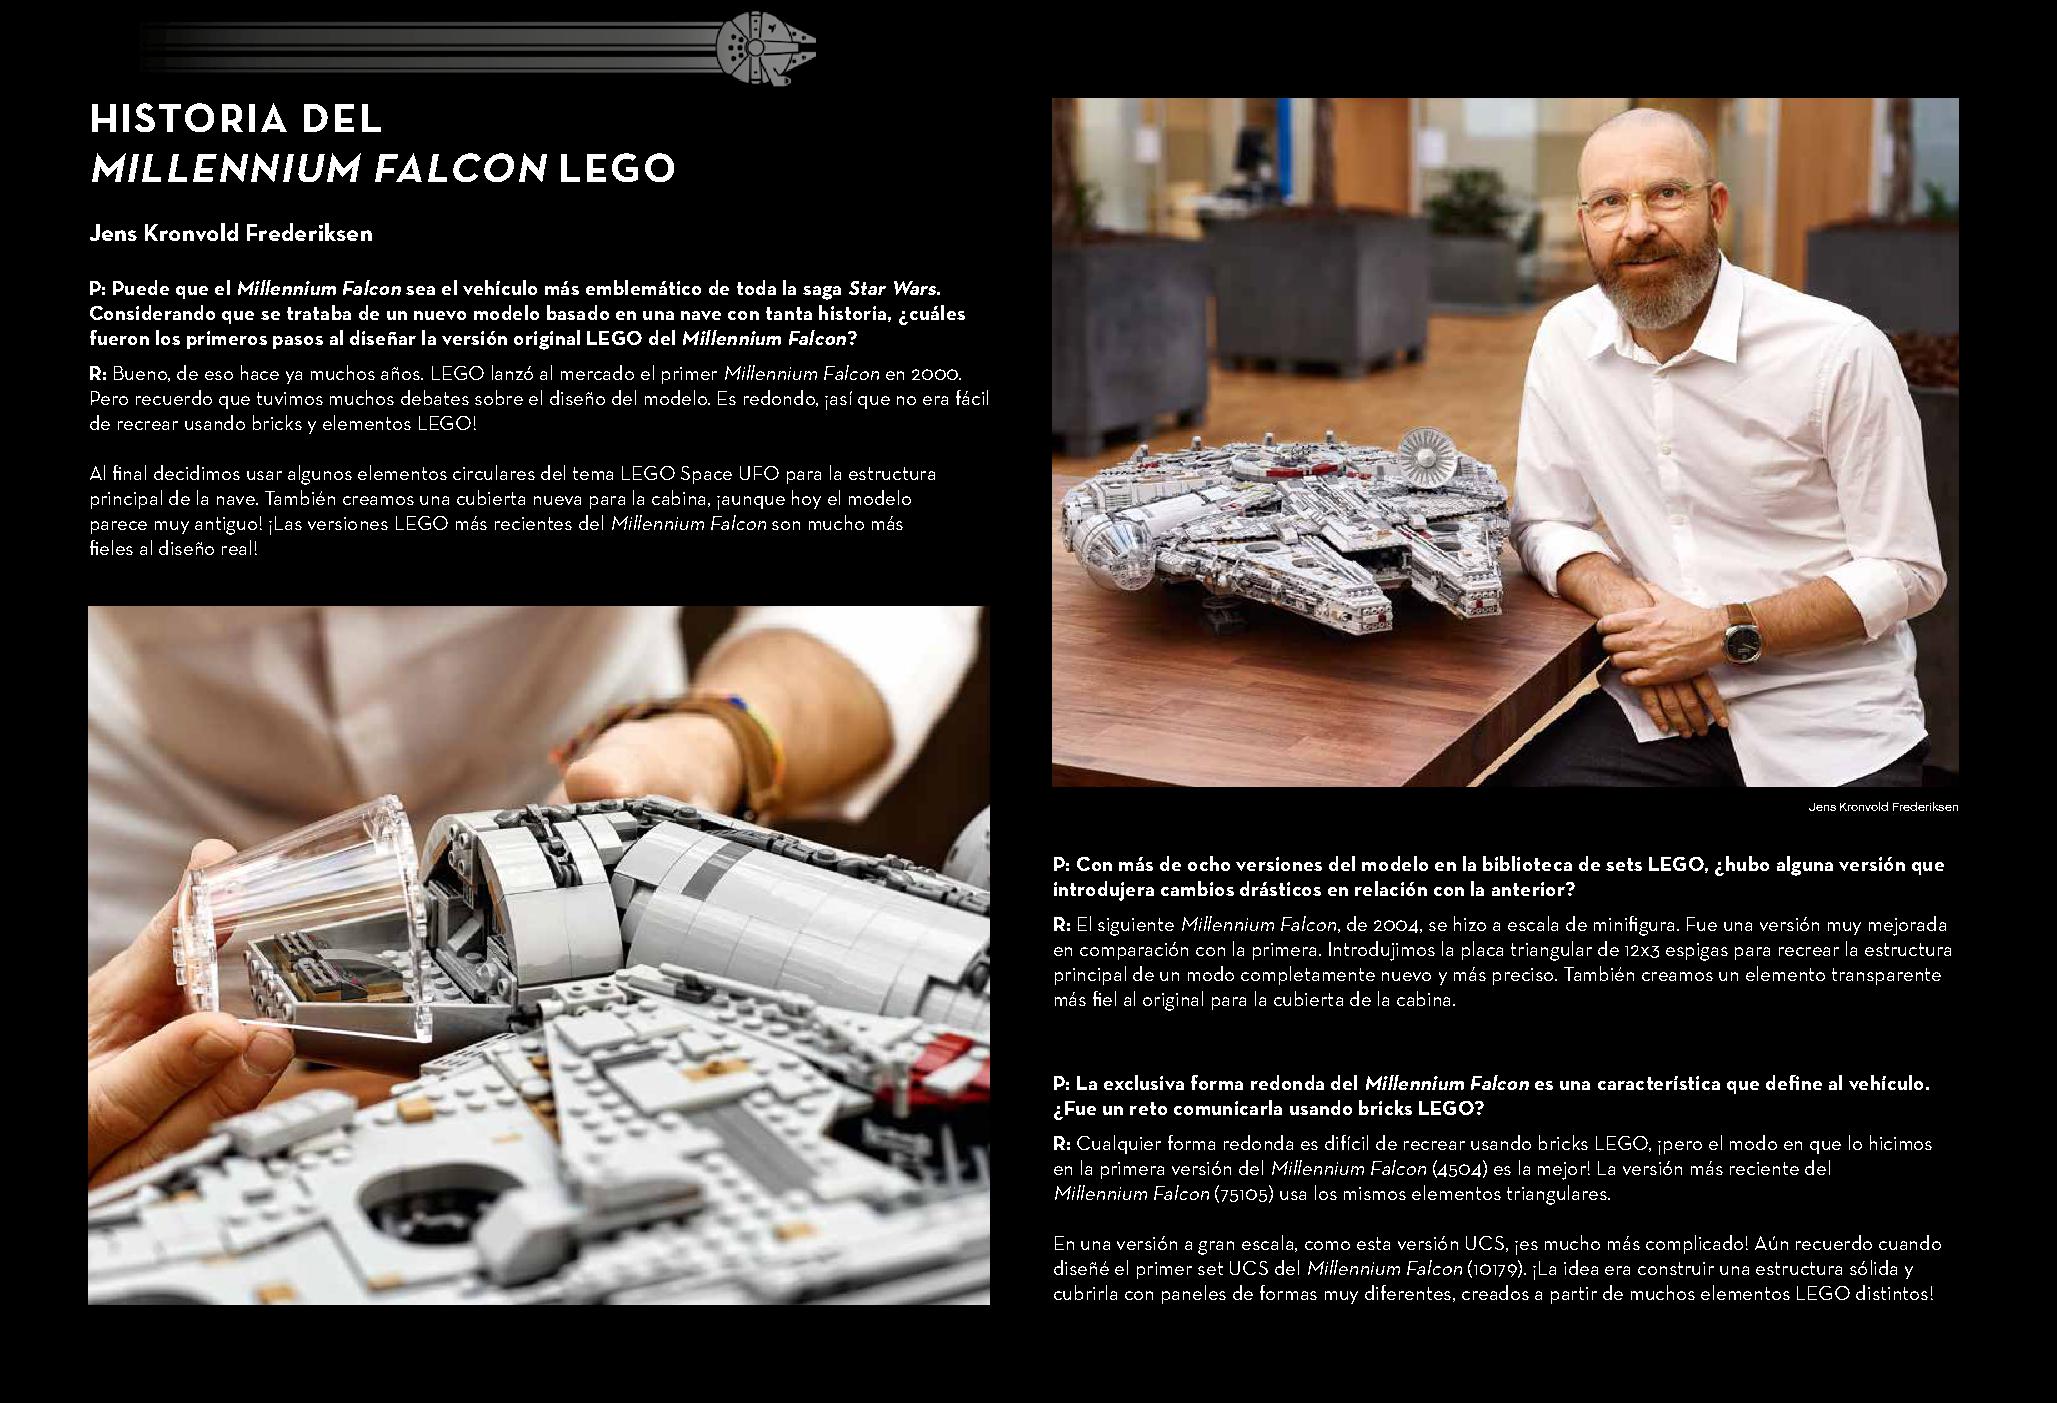 밀레니엄 팔콘™ 75192 레고 세트 제품정보 레고 조립설명서 37 page